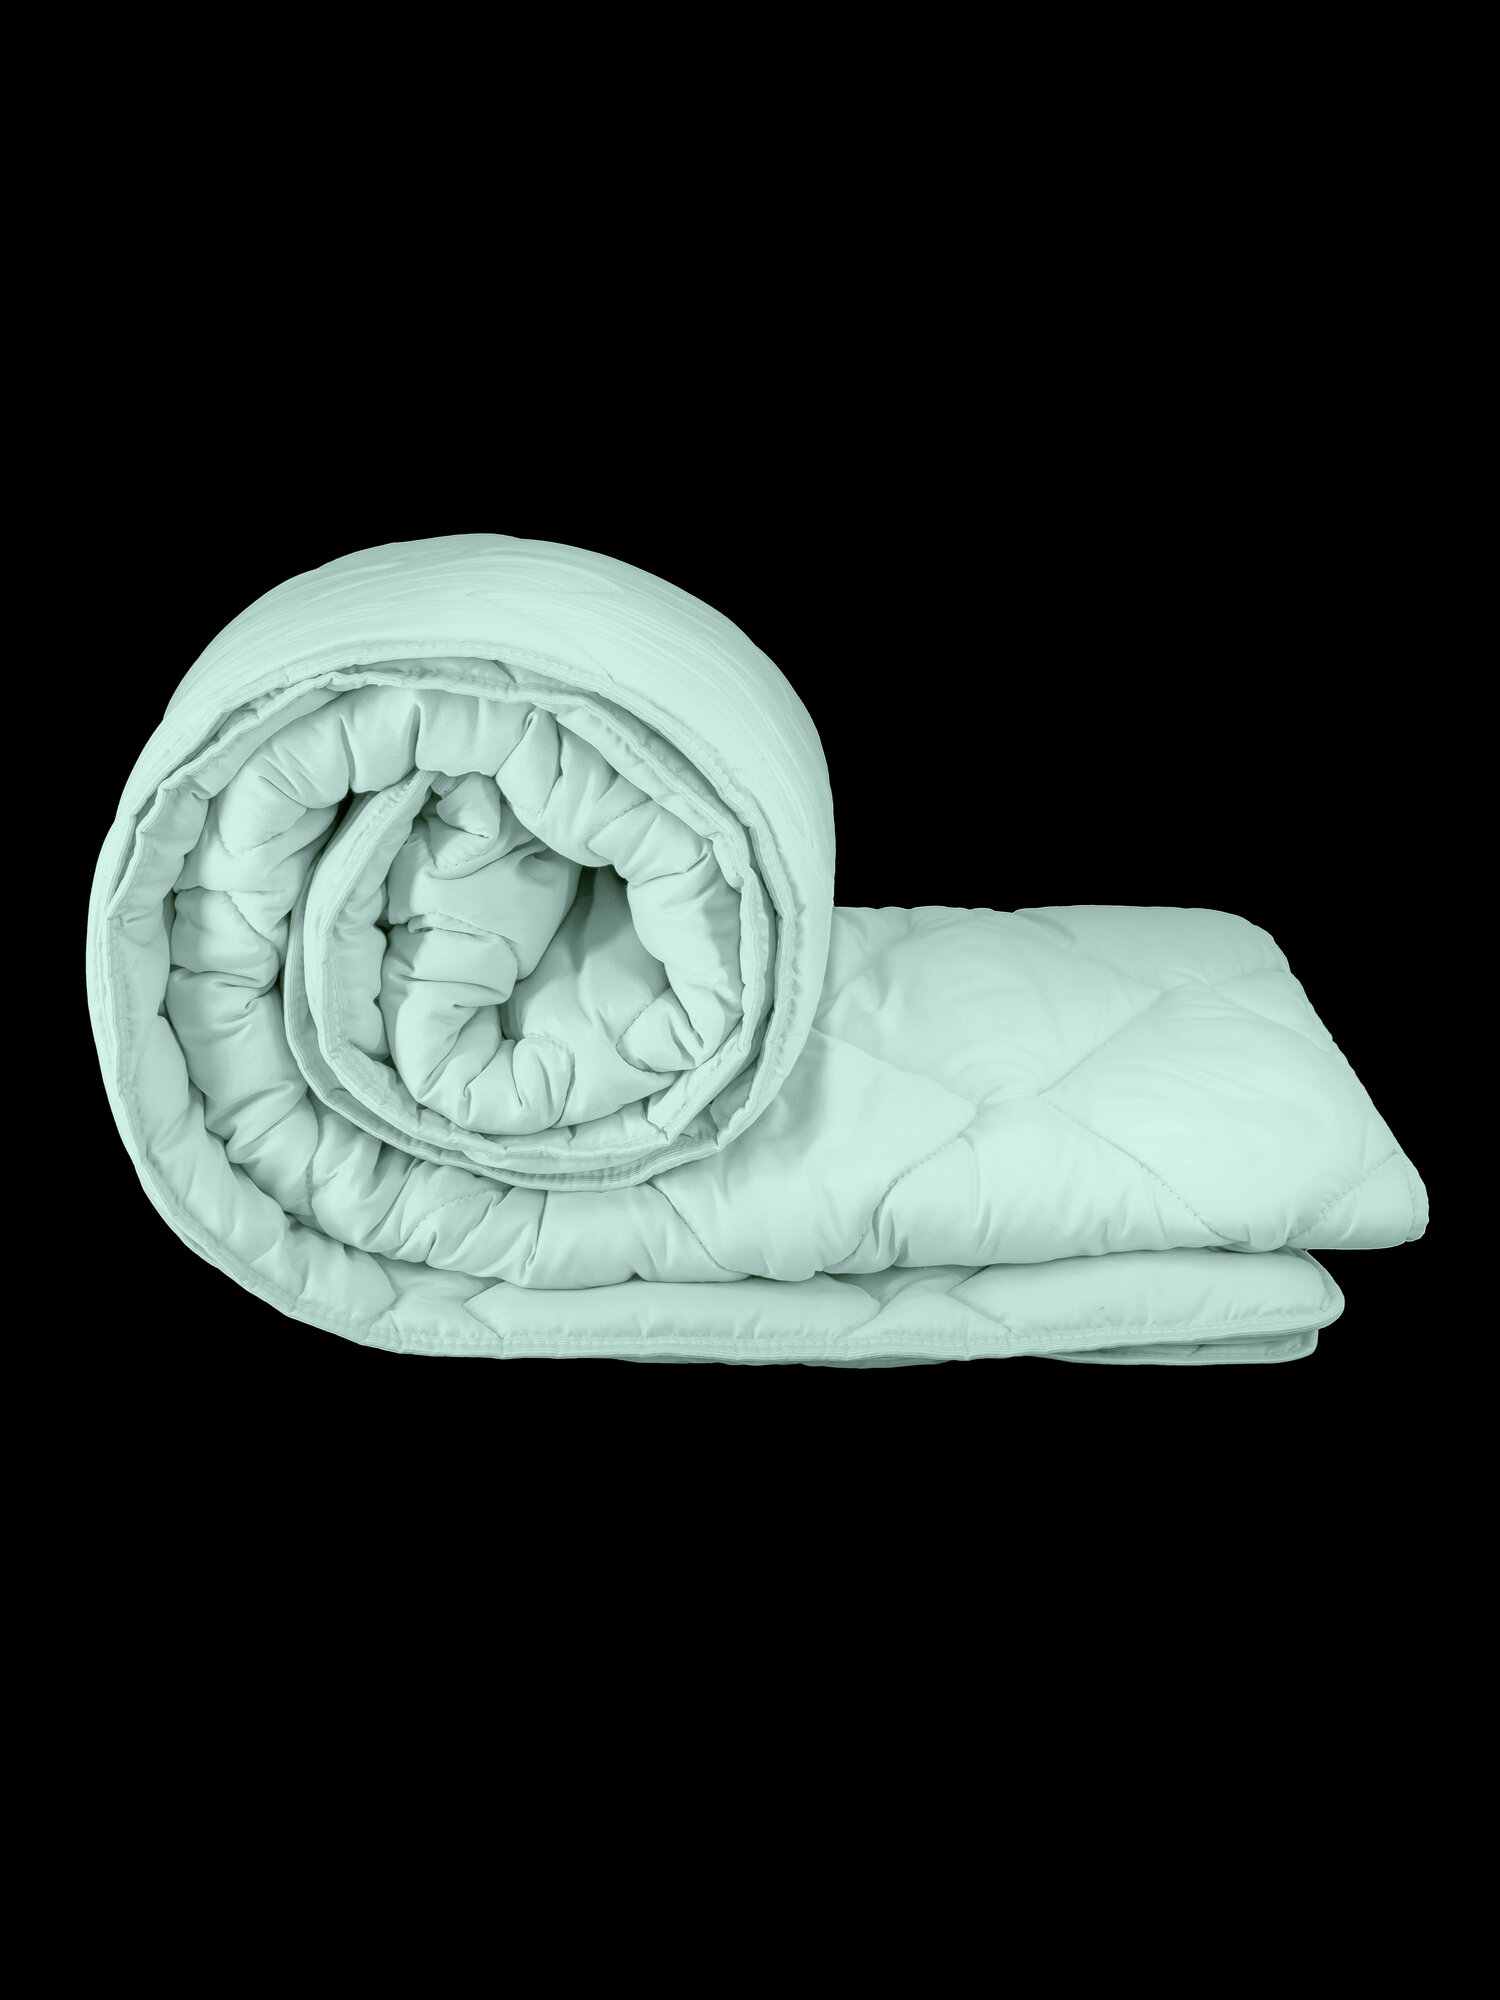 Одеяло Непроспи "Эвкалипт" 2-х спальное, 172х205 см / Всесезонное, теплое, стеганое одеяло из эвкалиптового волокна